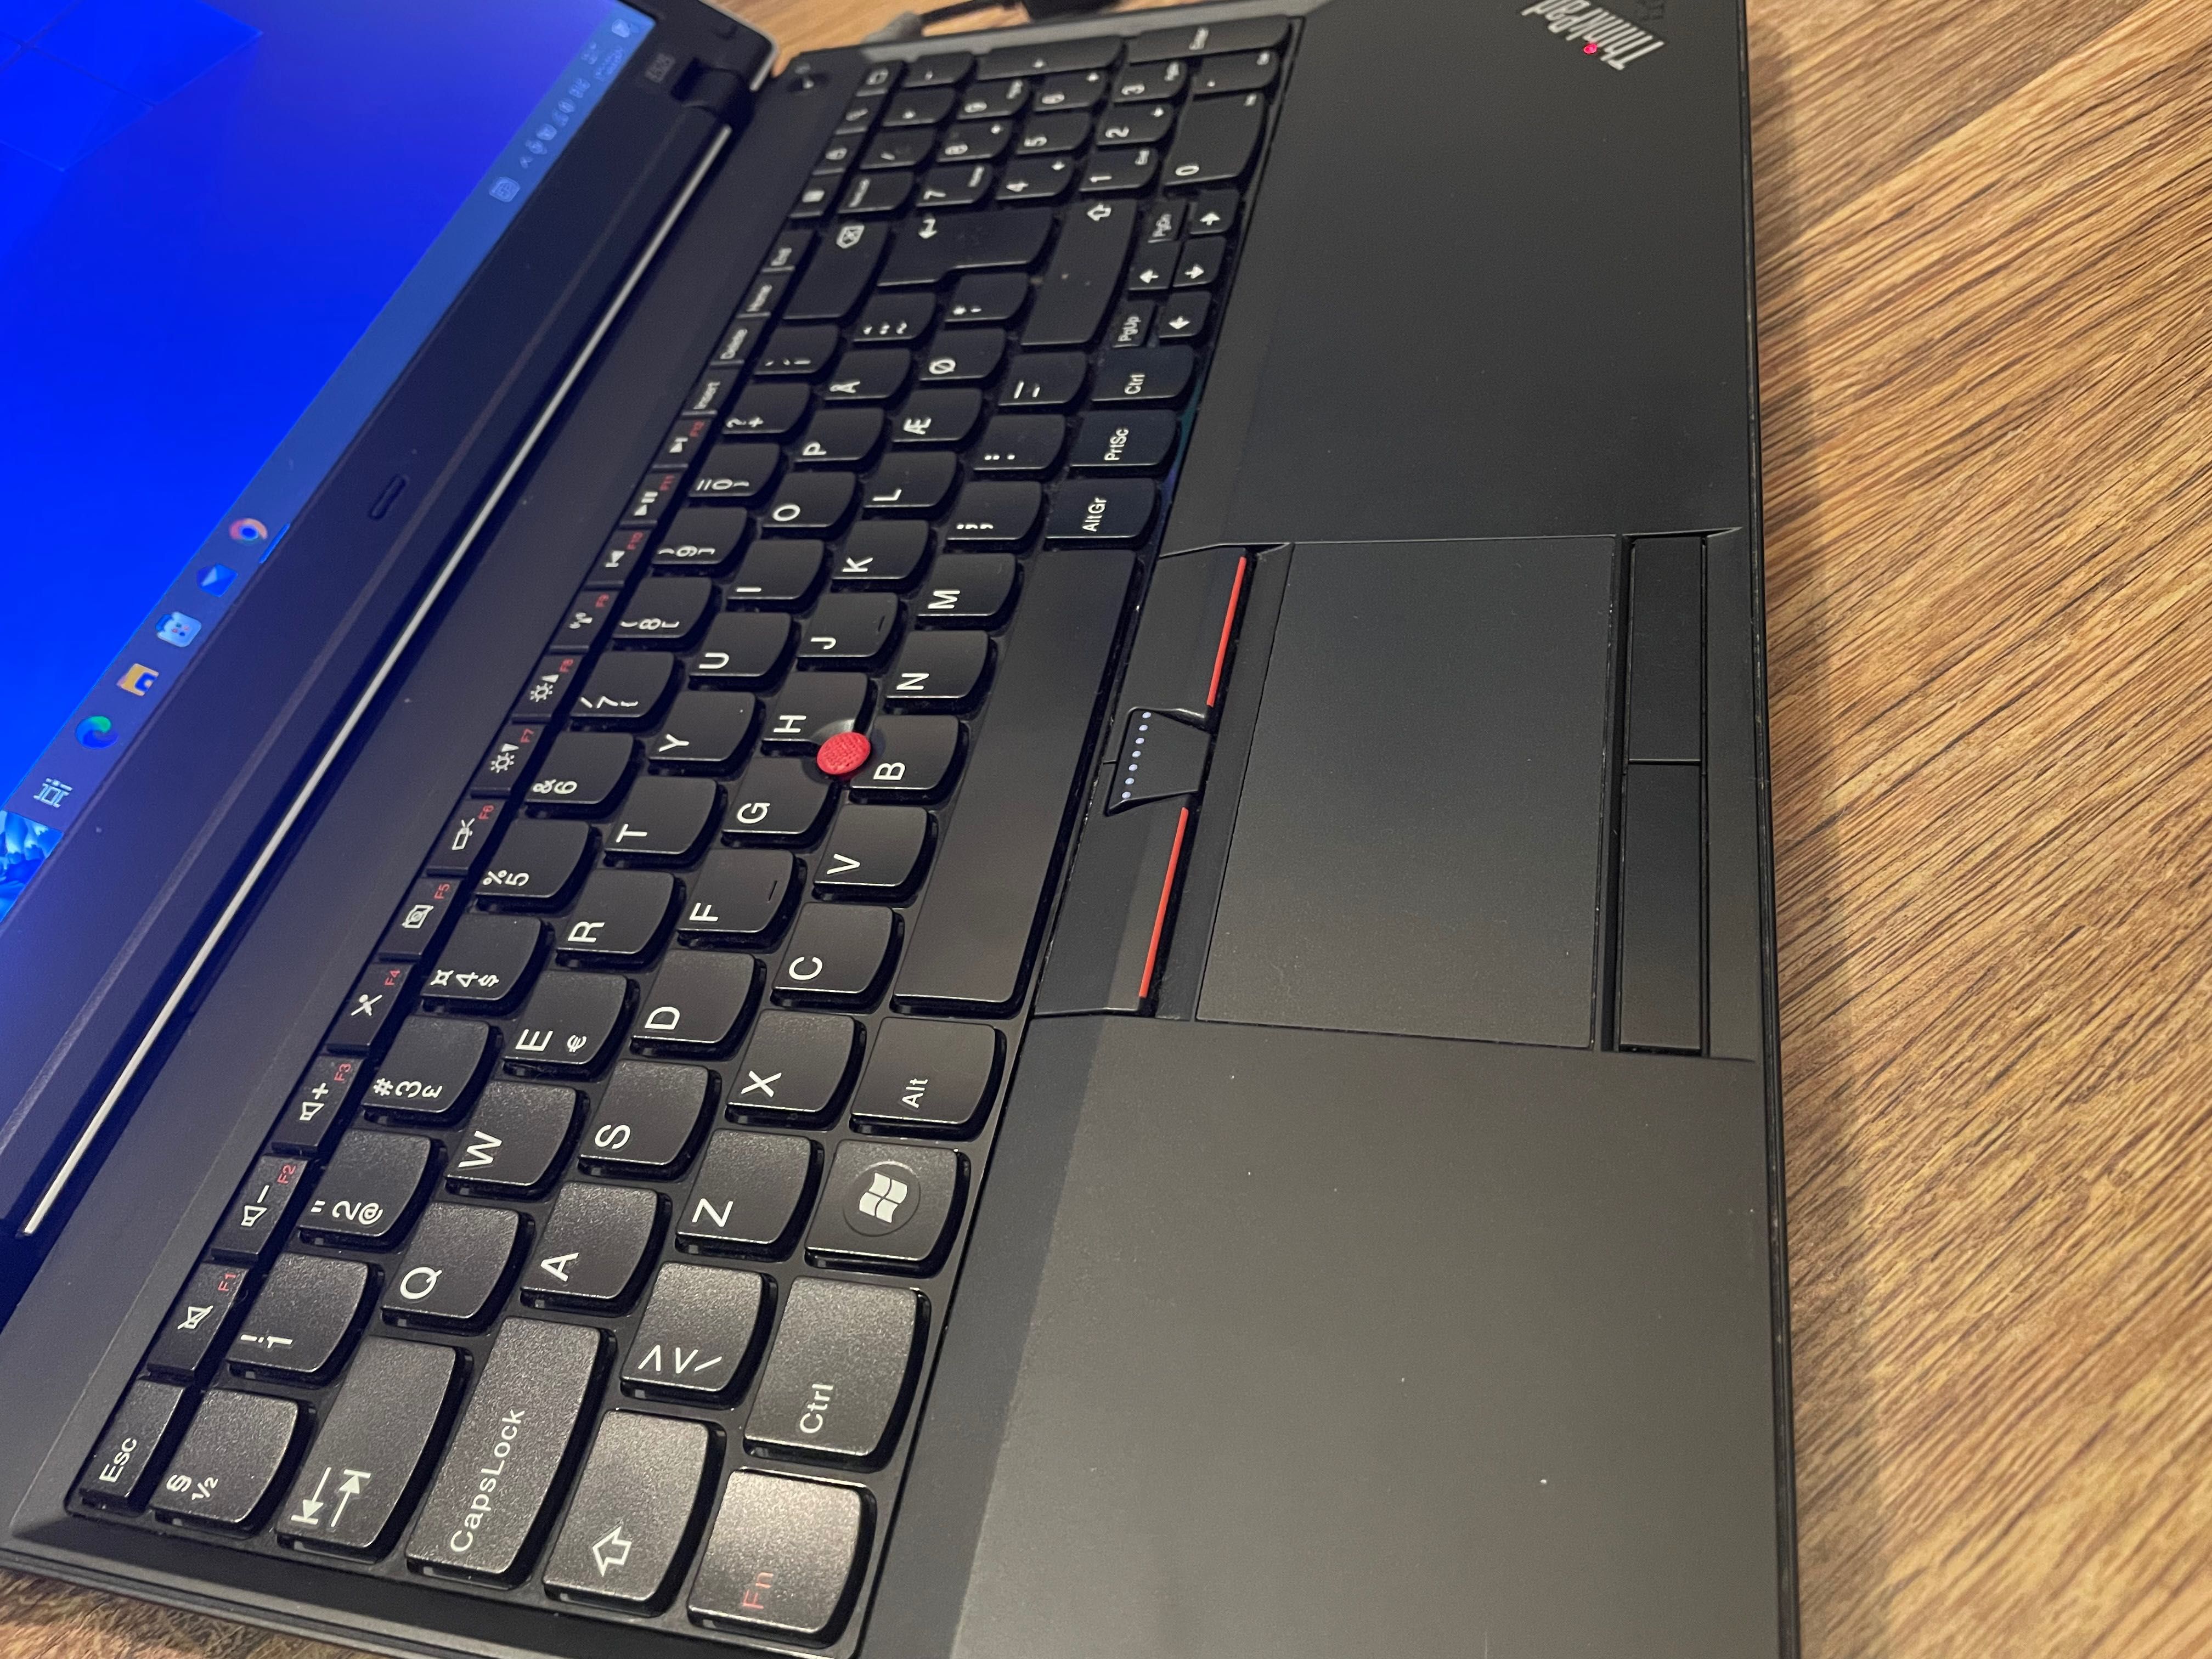 LENOVO  ThinkPad E525  AMD A4, 3300M 1900MHz 2MB